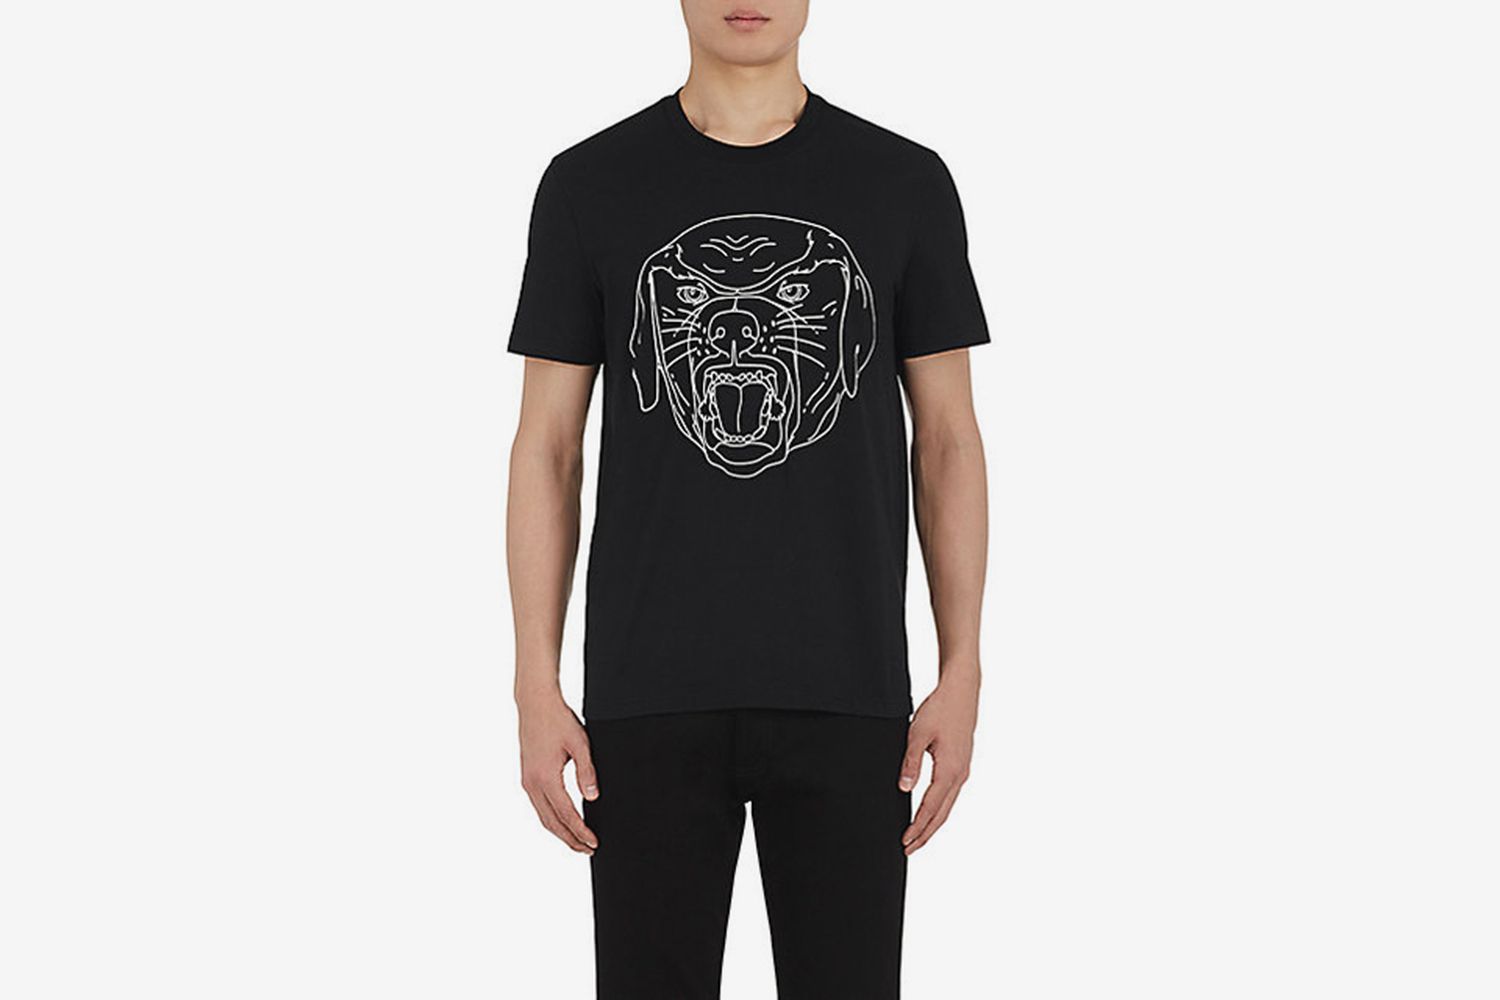 Stenciled-Rottweiler Cotton T-Shirt